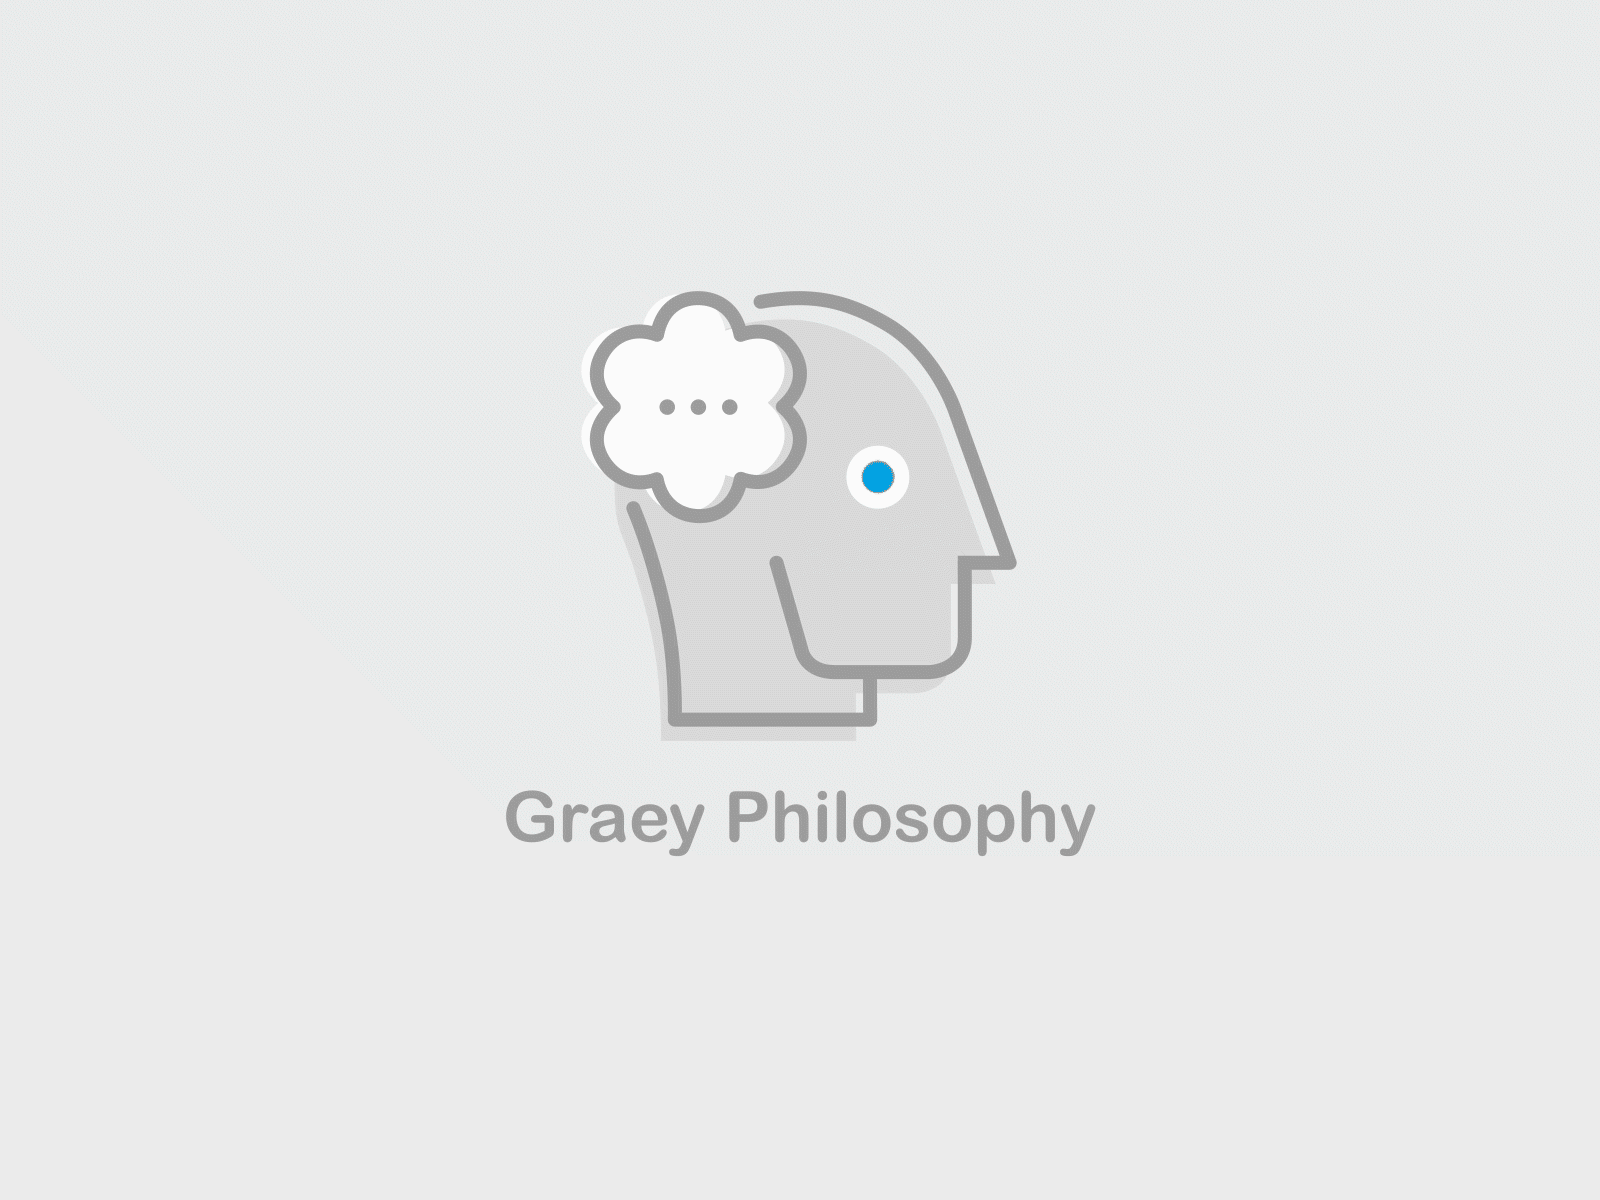 Graey Philosophy Intro intro logo animation youtube